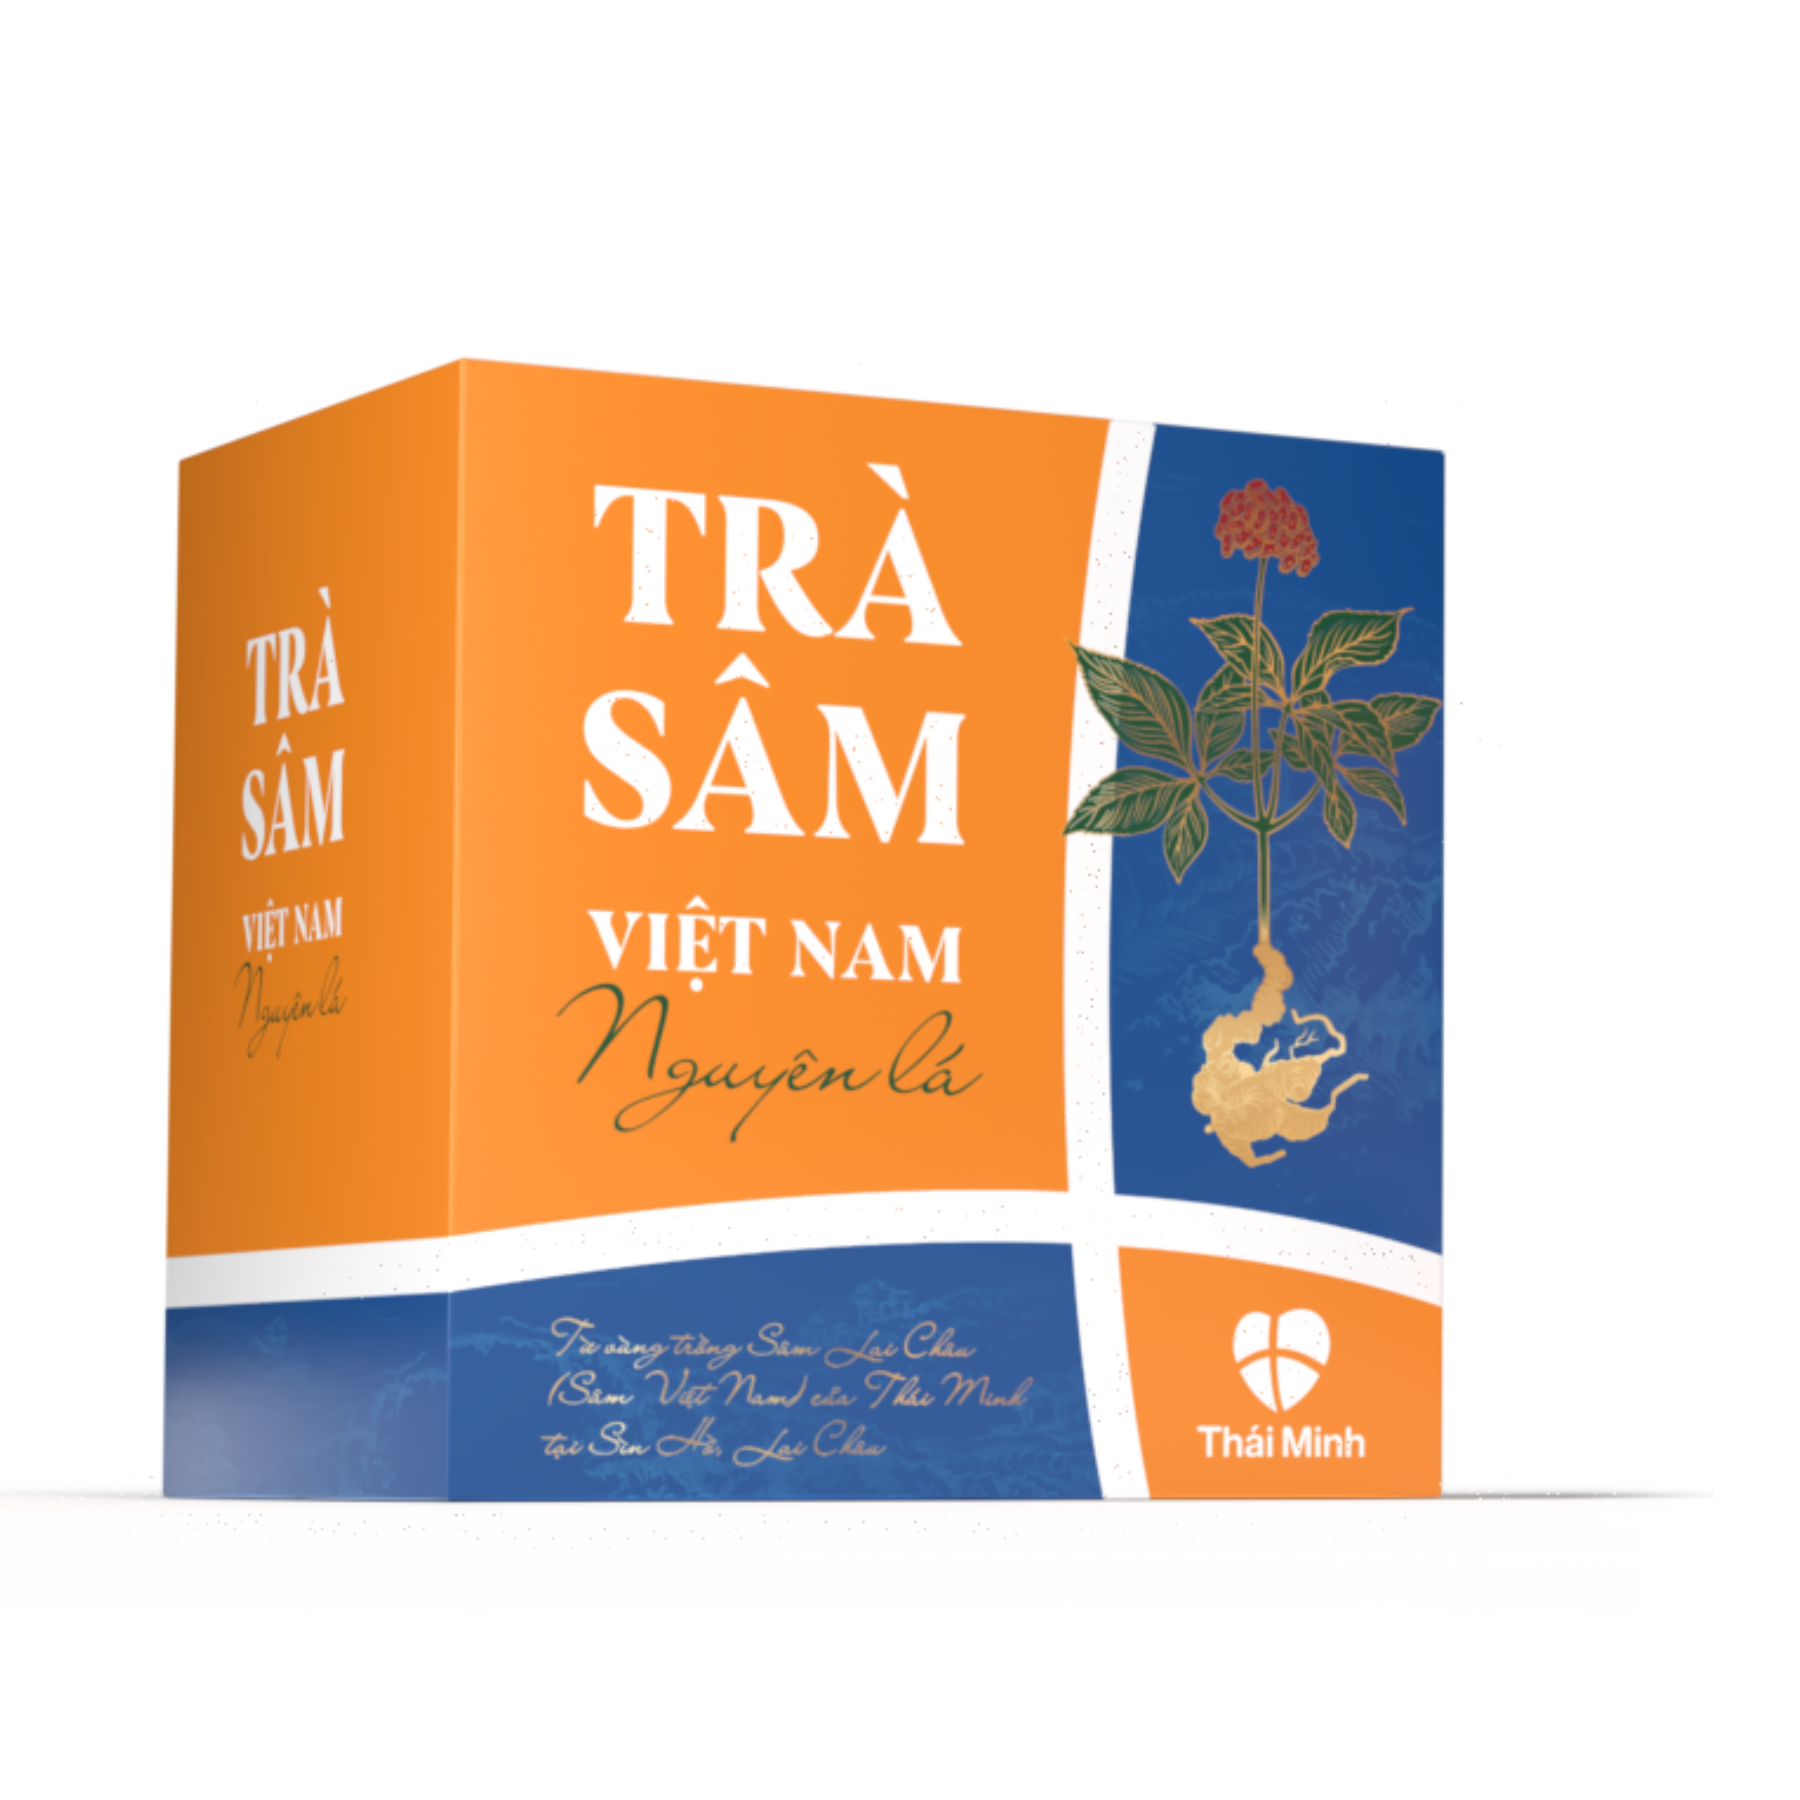 Trà Sâm Việt Nam nguyên lá